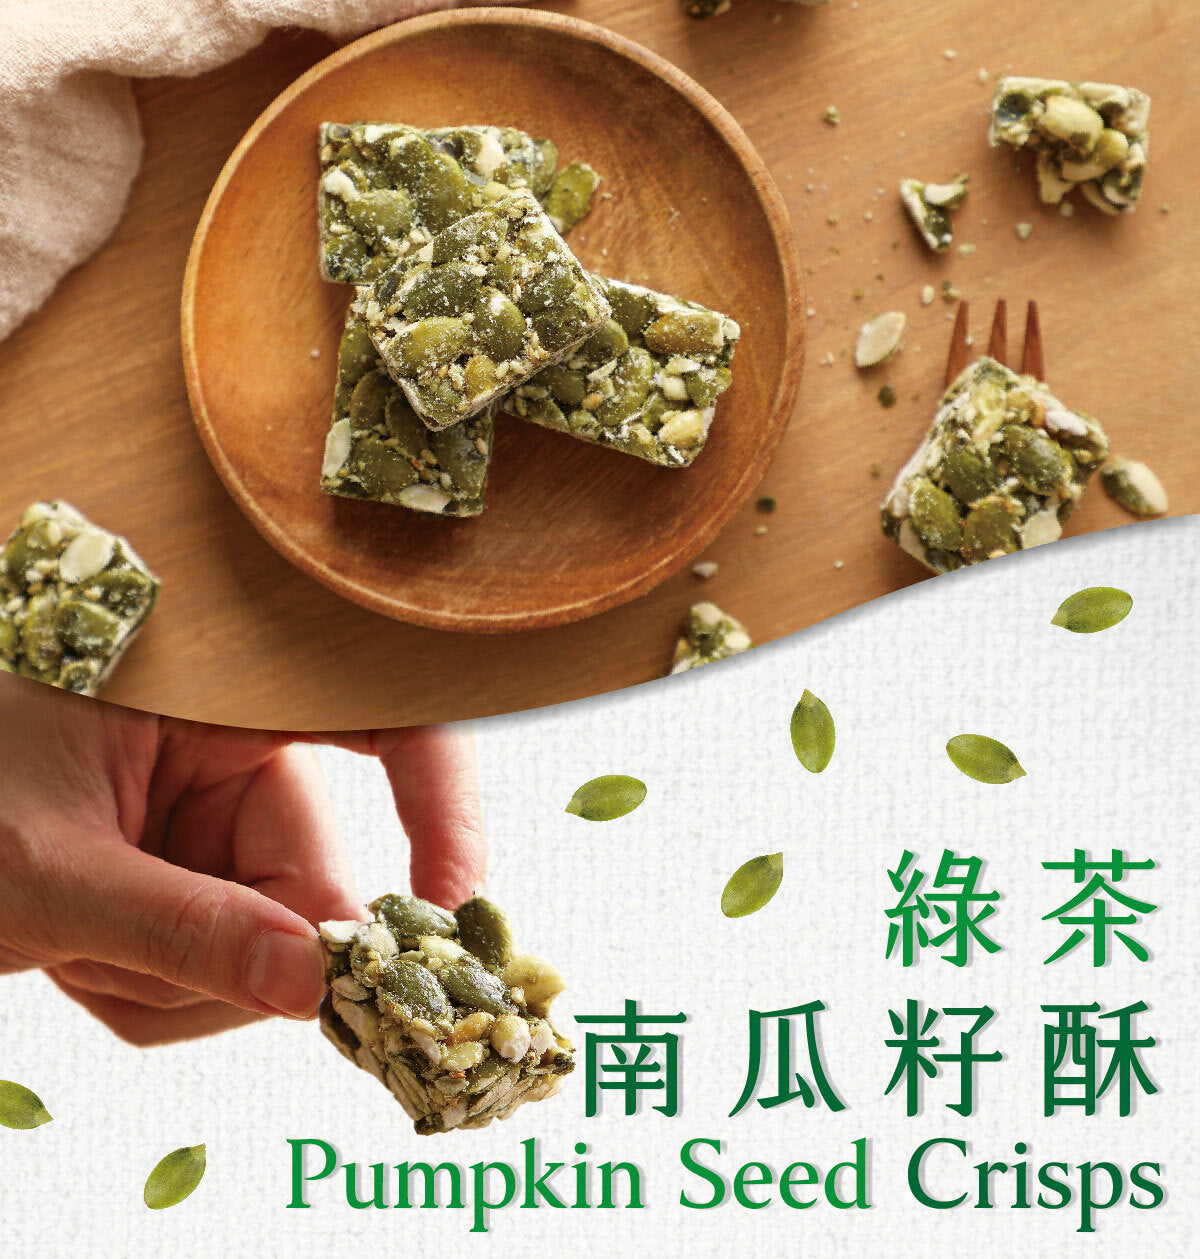 #3798 綠茶南瓜酥 Pumpkin Seed Crisps (豆之家) 150 g, 24/cs